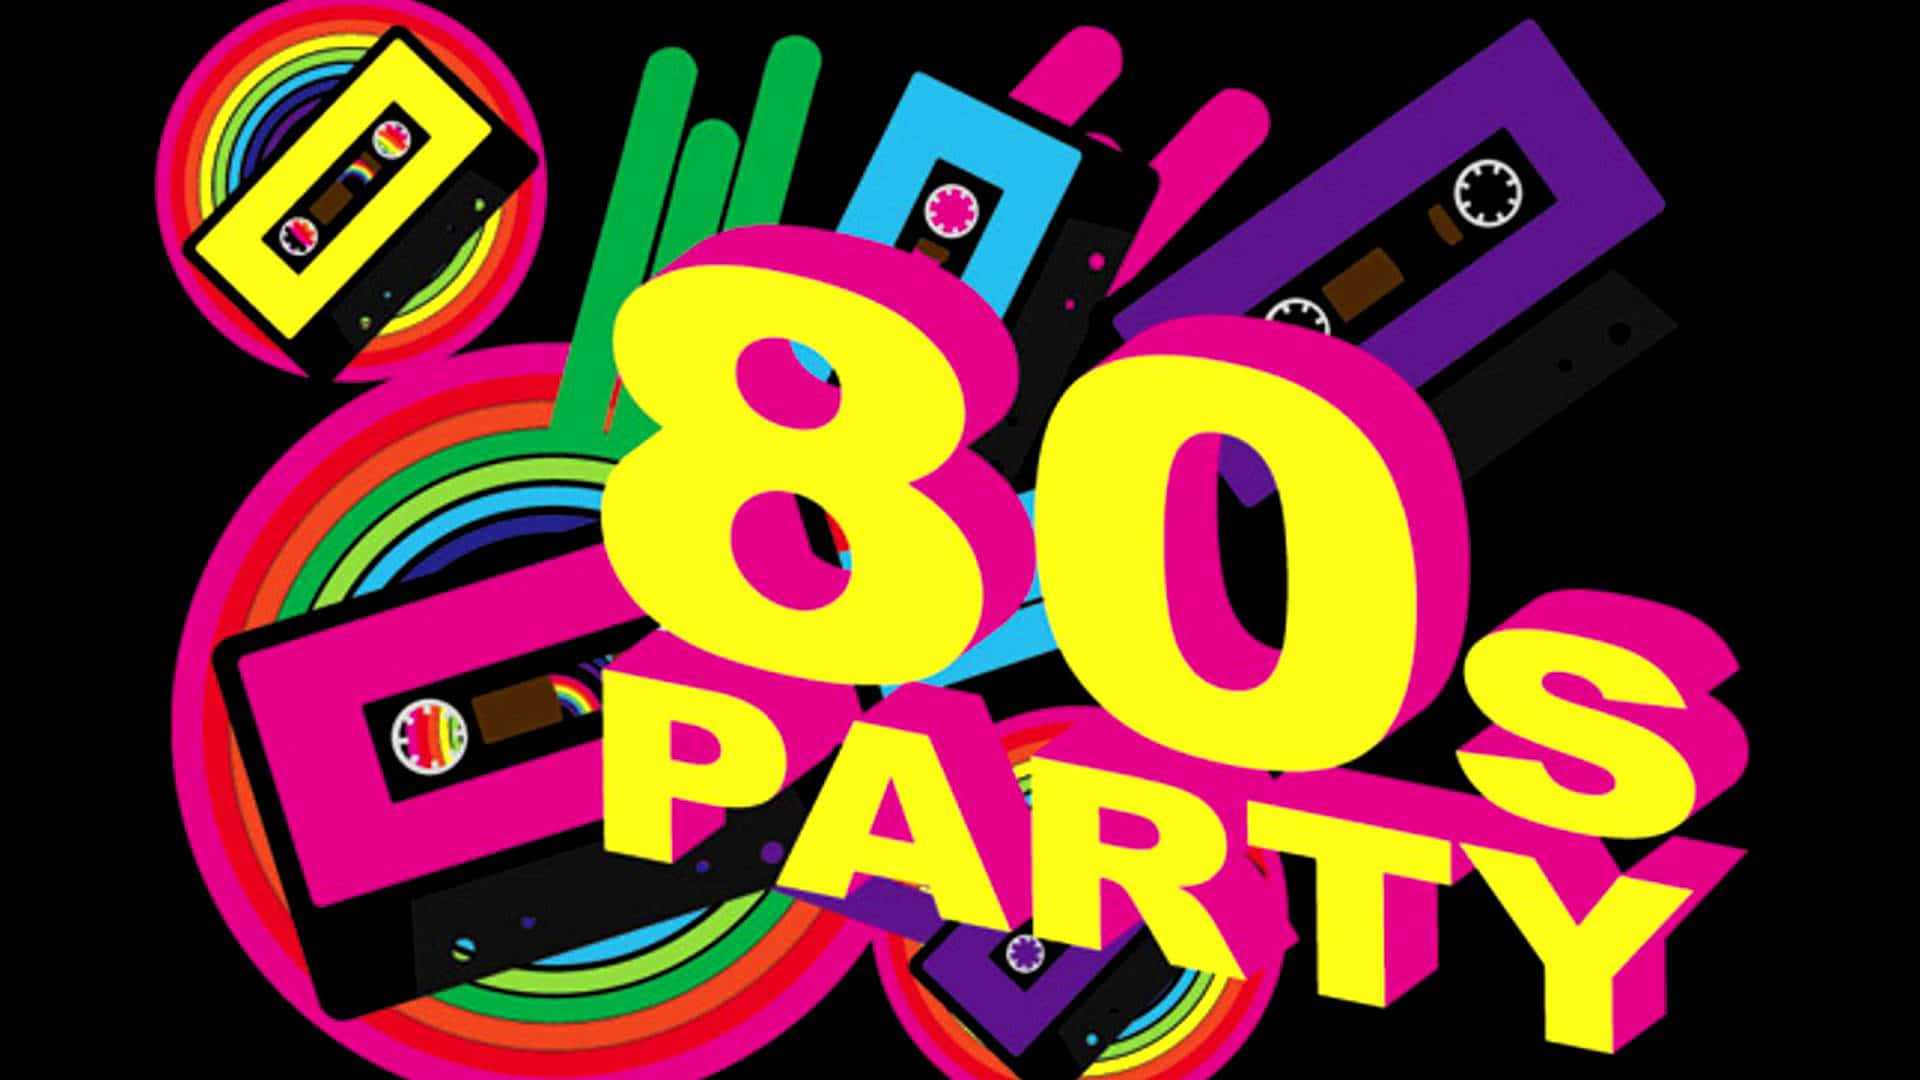 Пд 90. Стиль 80х. Приглашение на вечеринку в стиле 80-х. Пригласительные на вечеринку 80-х. Вечеринка в стиле 80-х.